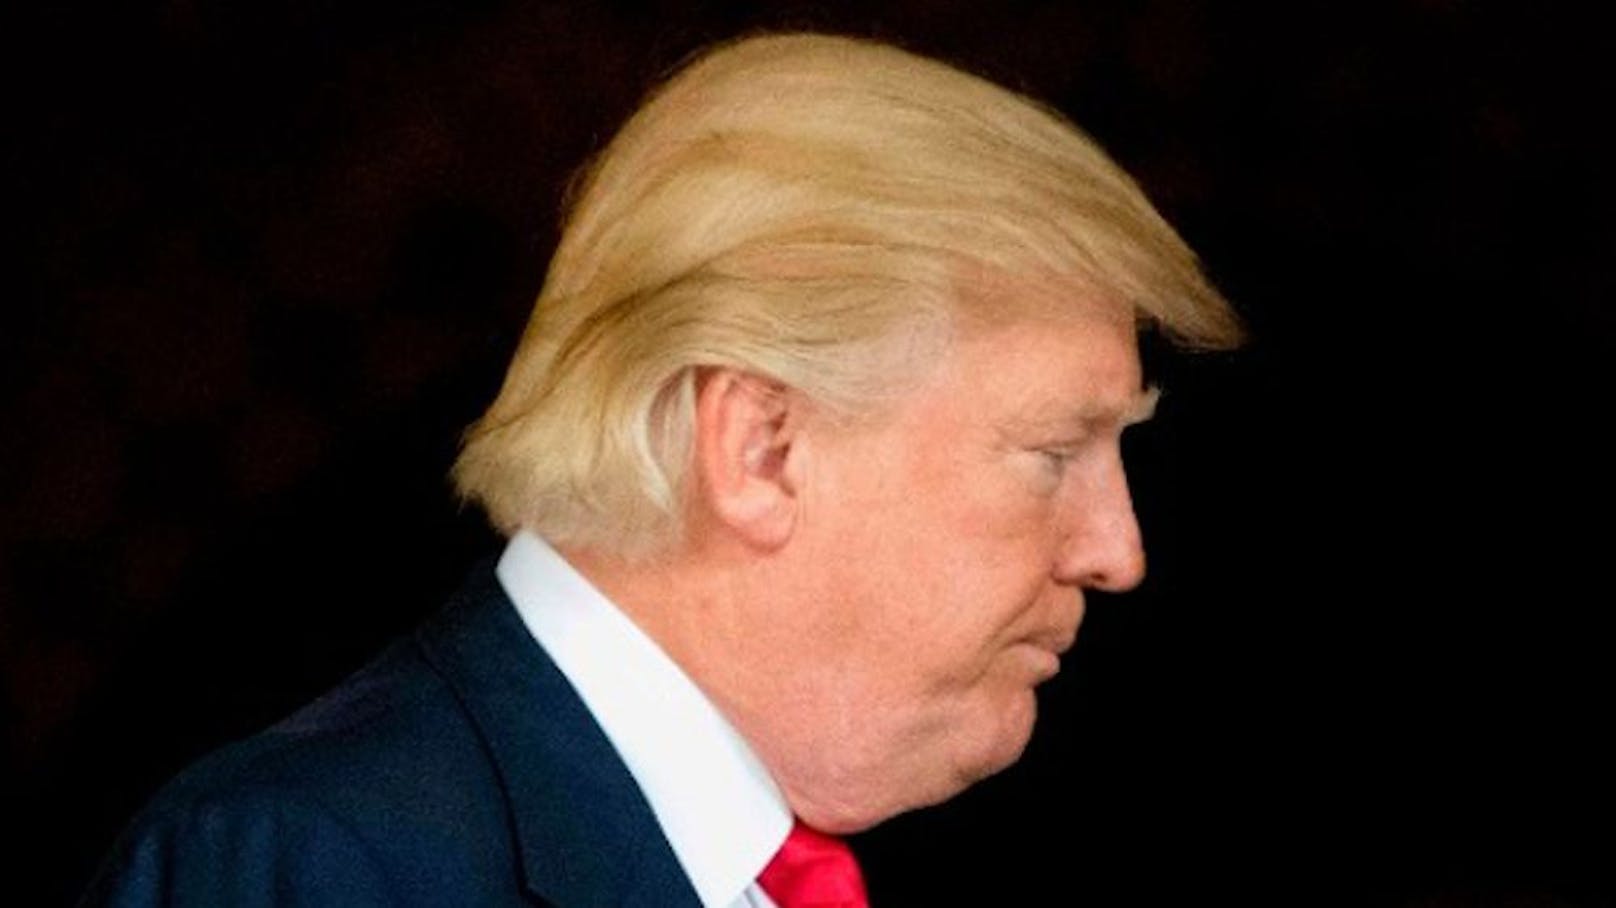 So orange sieht Donald Trumps jetzt nicht mehr aus